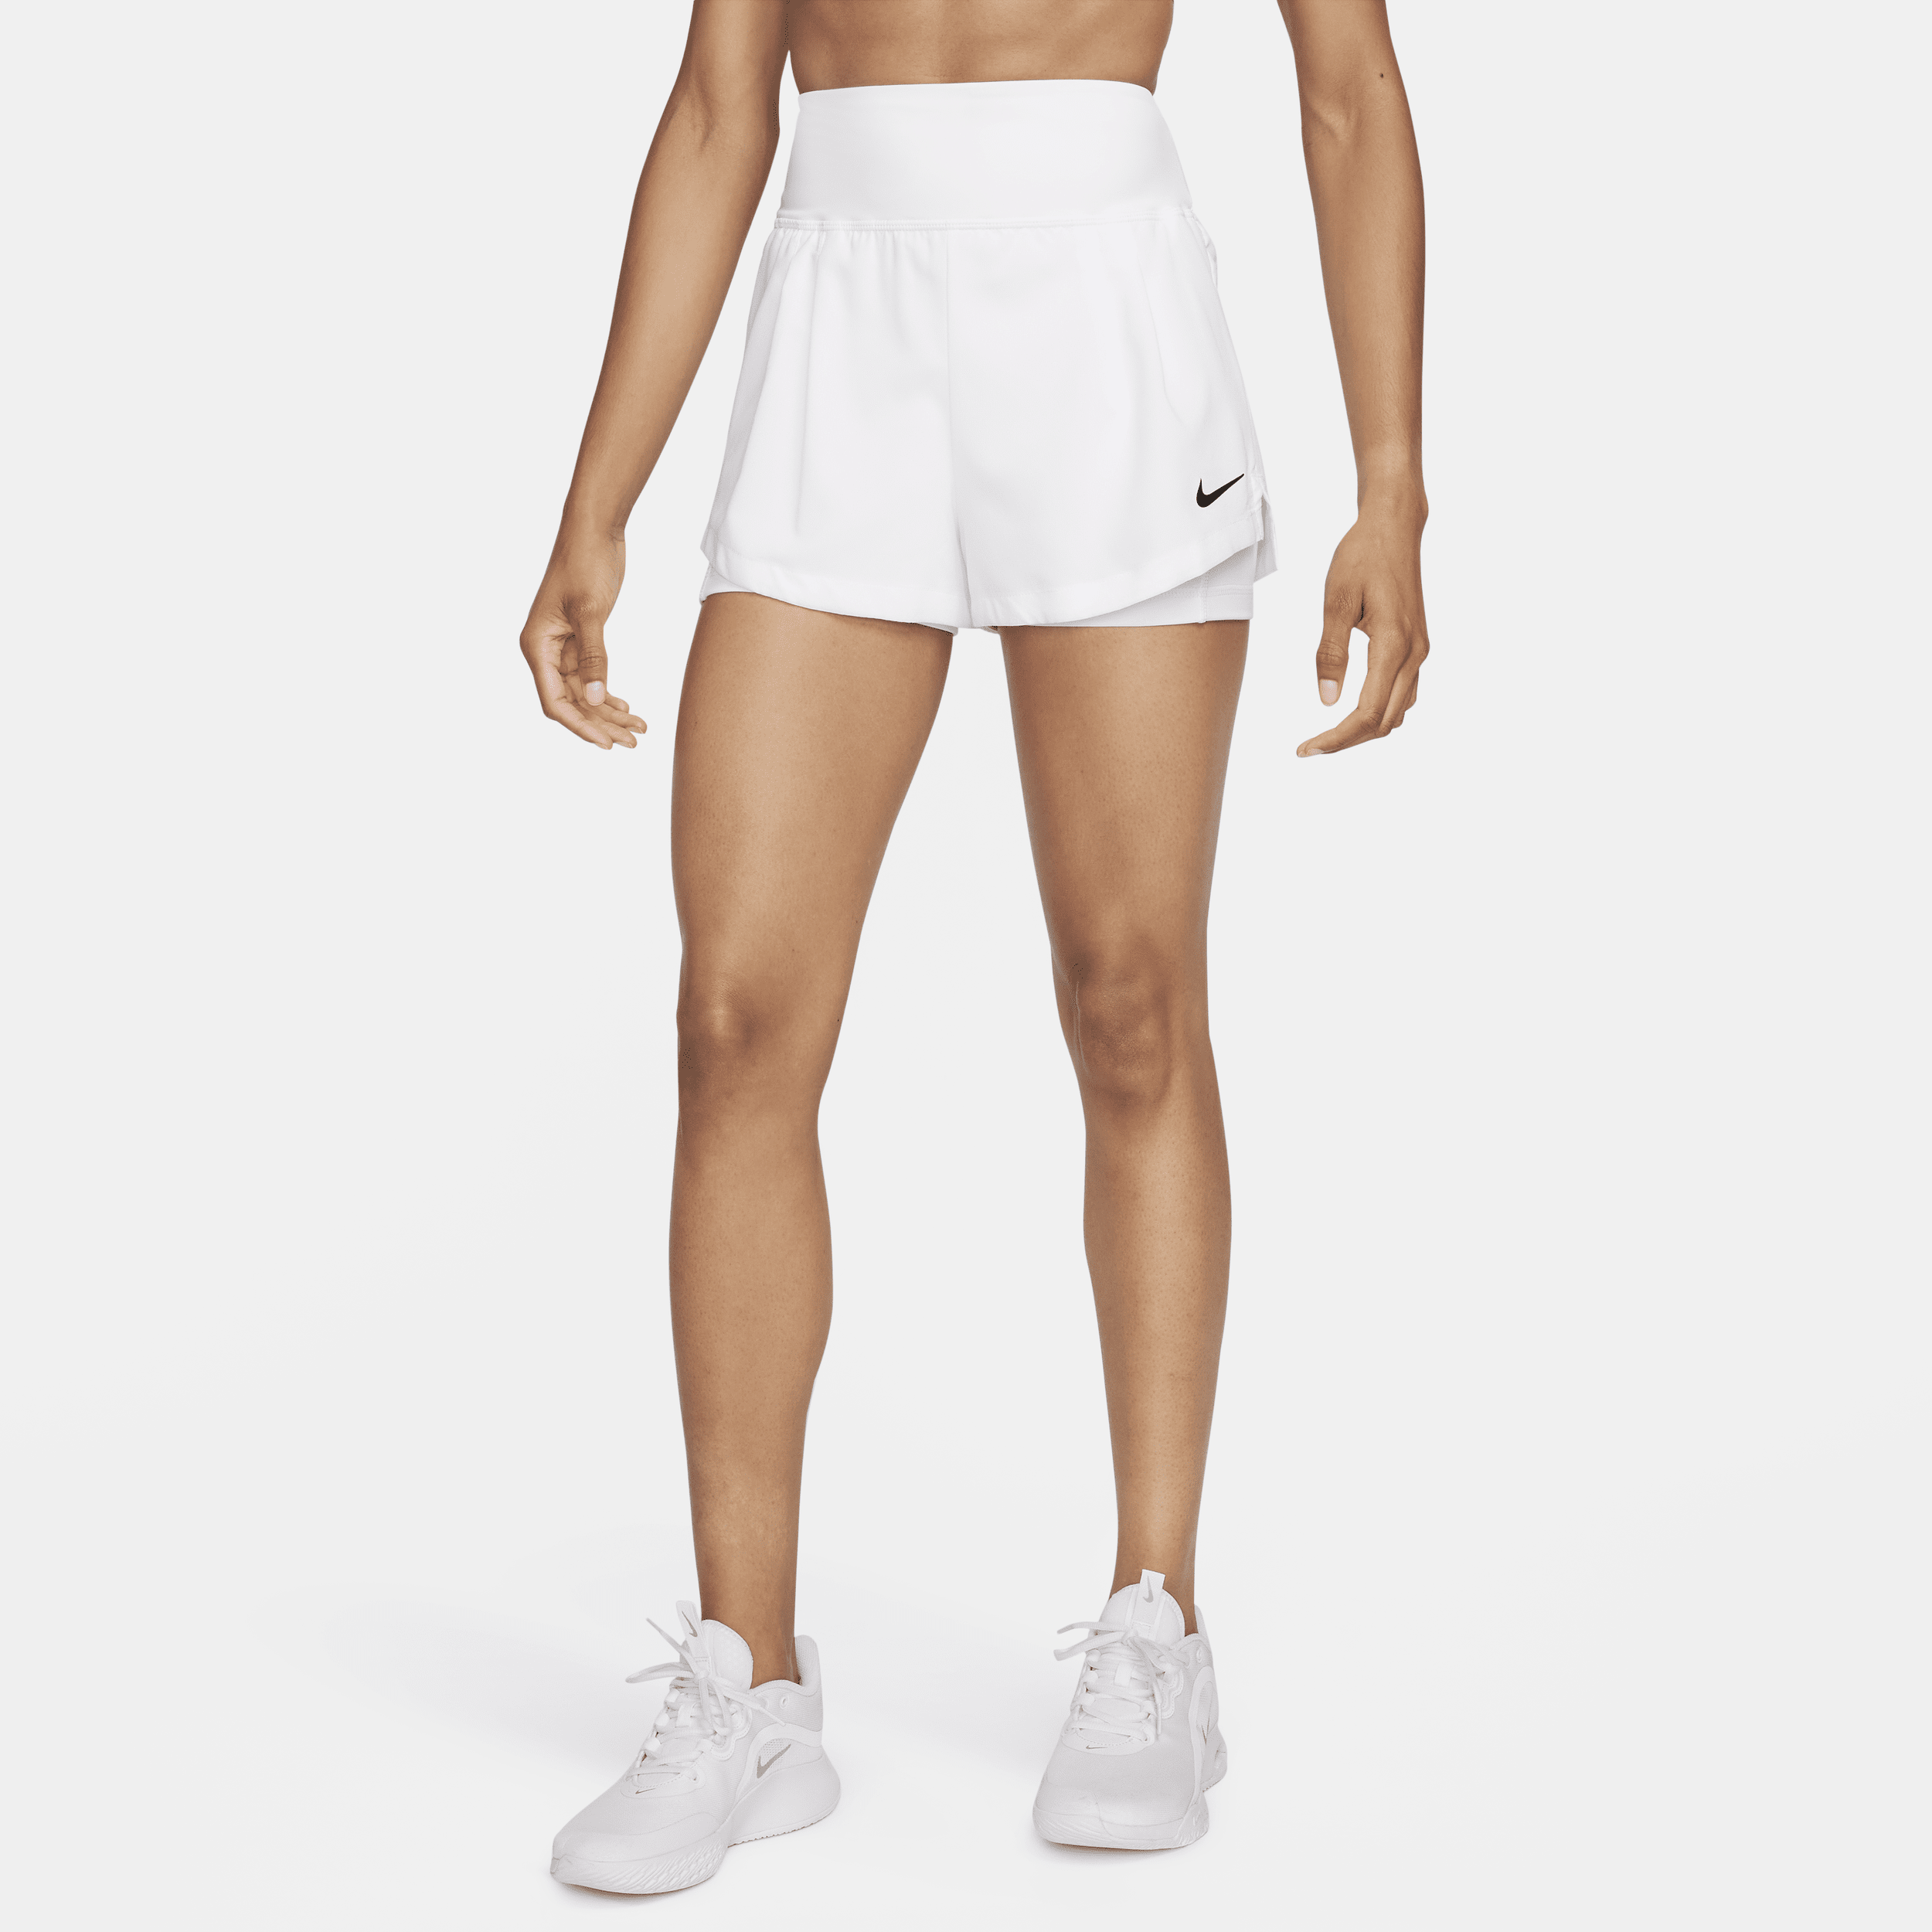 NikeCourt Advantage Dri-FIT-tennisshorts til kvinder - hvid